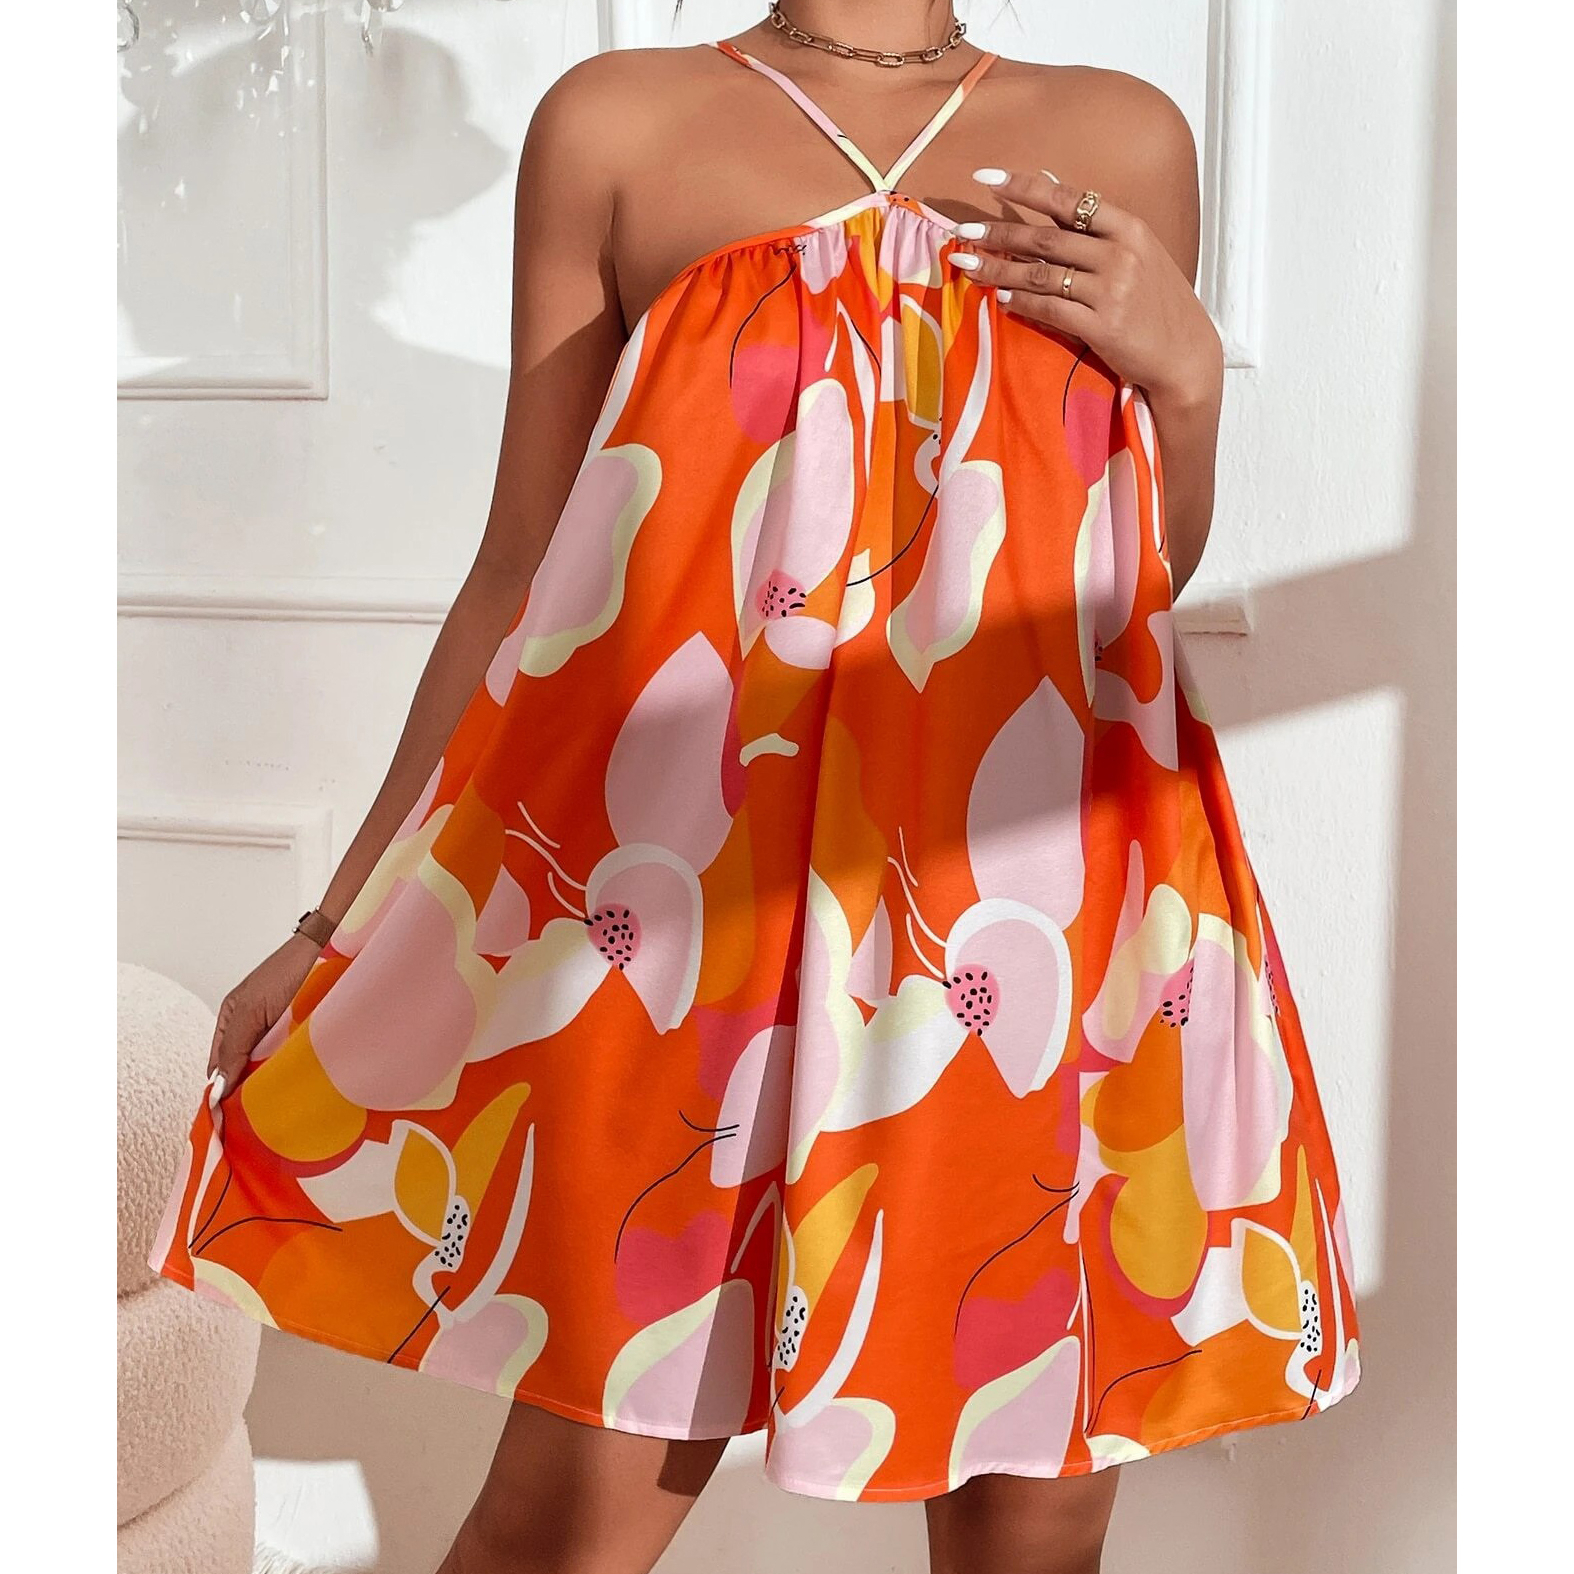 Allover Print Cami Dress - Orange, X-Small(2)